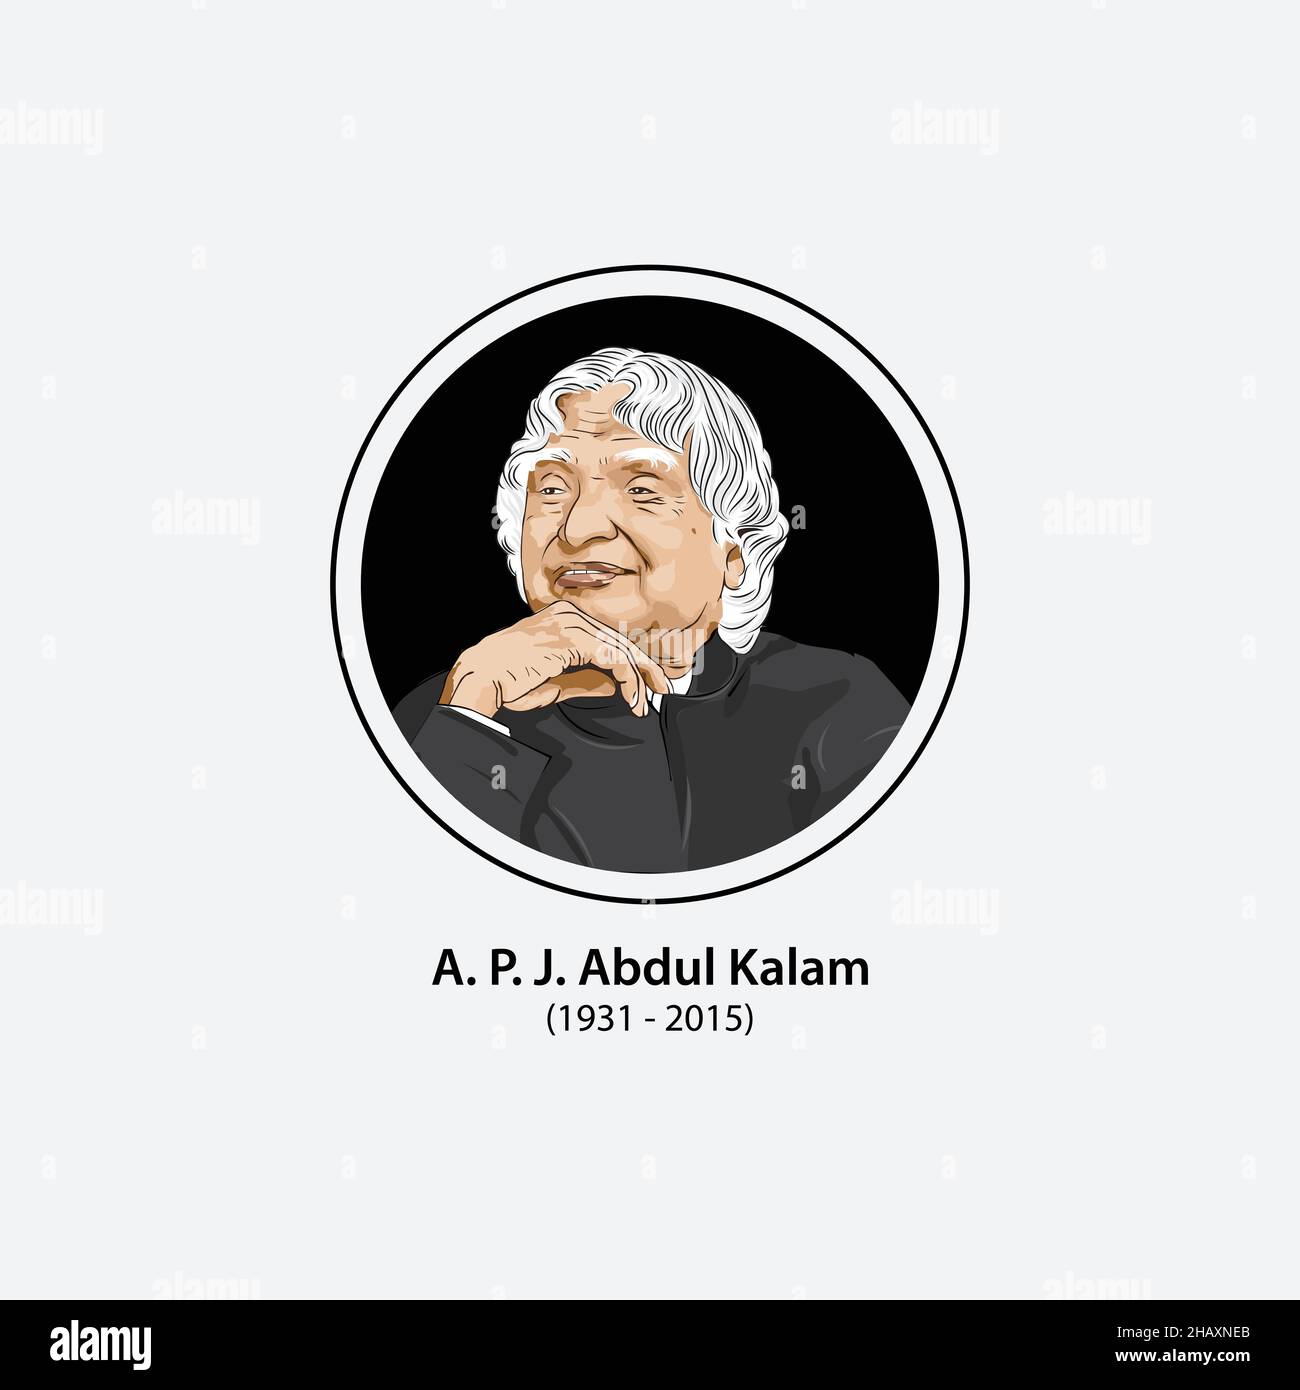 Avul Pakir Jainulabdeen Abdul Kalam war ein indischer Luft- und Raumfahrtwissenschaftler, der von 2002 bis 2007 als Präsident von Indien 11th fungierte. Stock Vektor